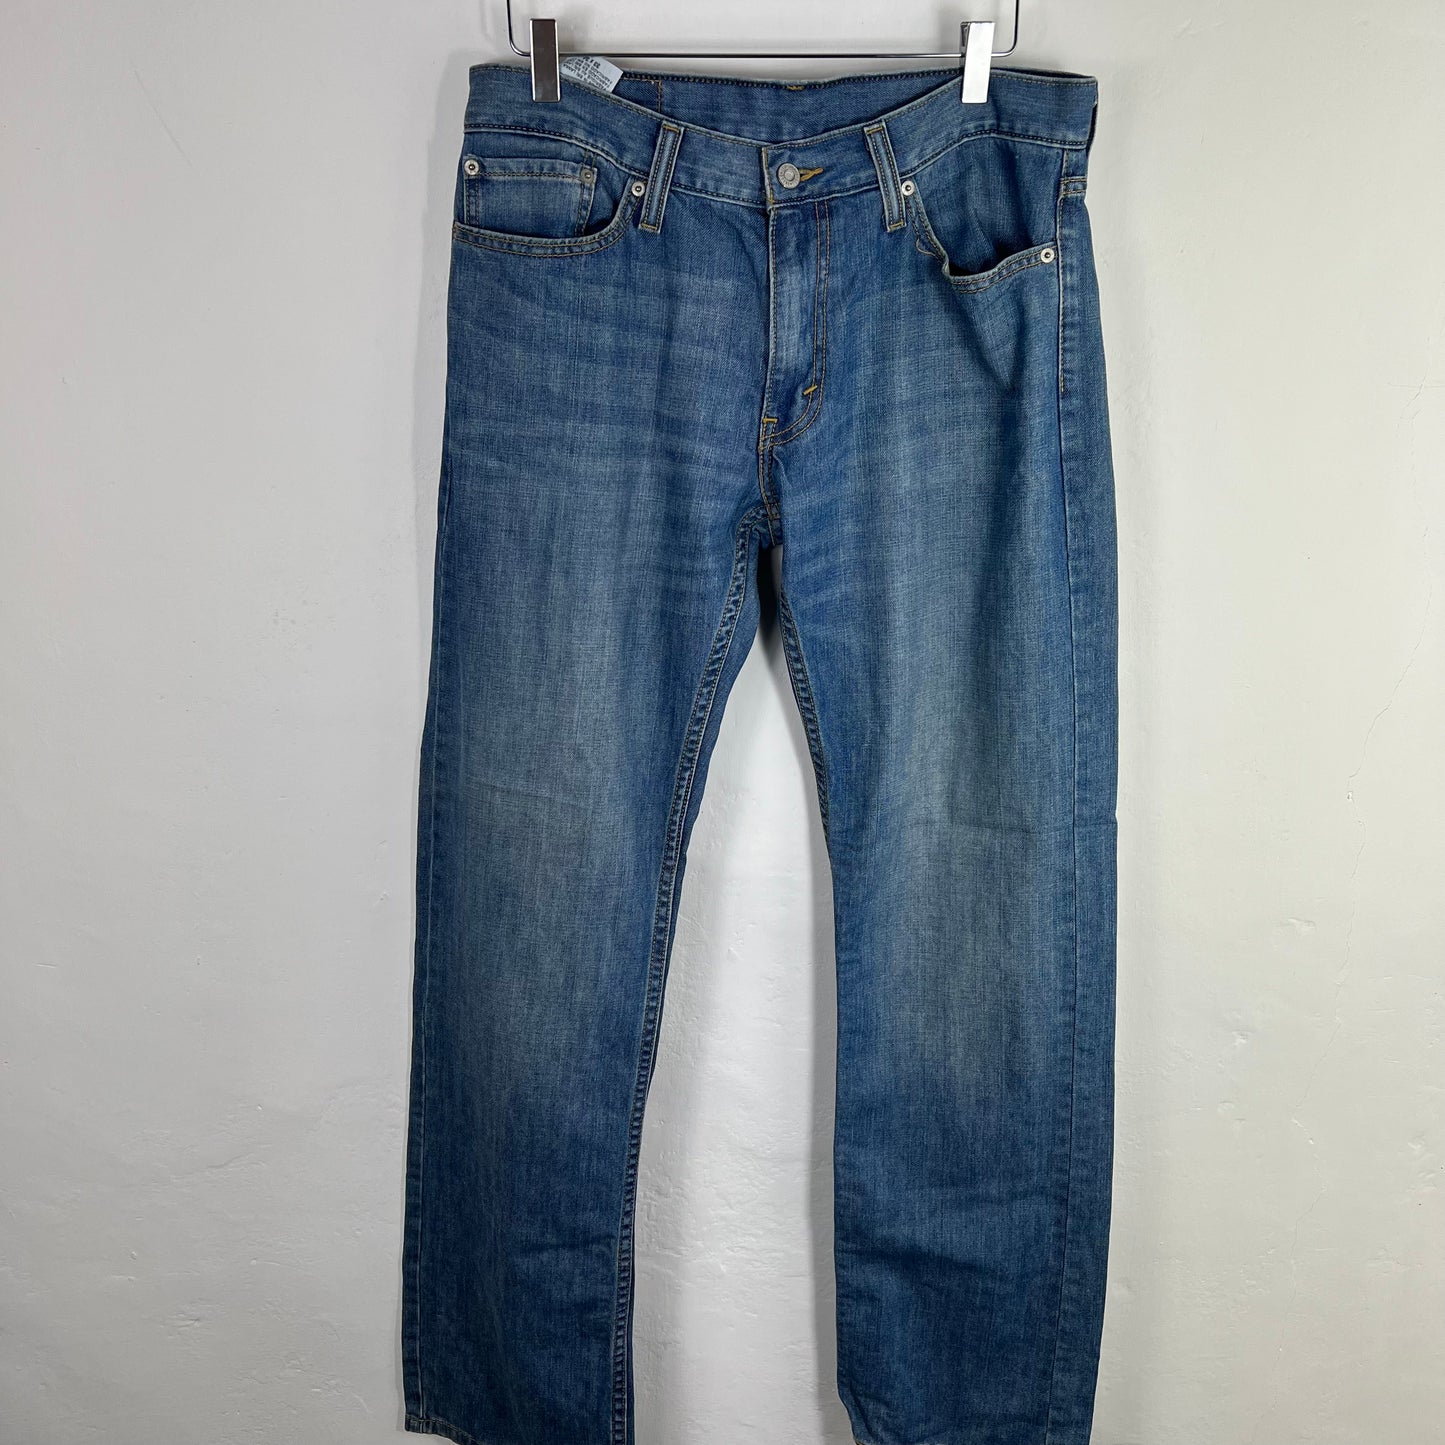 Levi’s 514 jeans 33x34